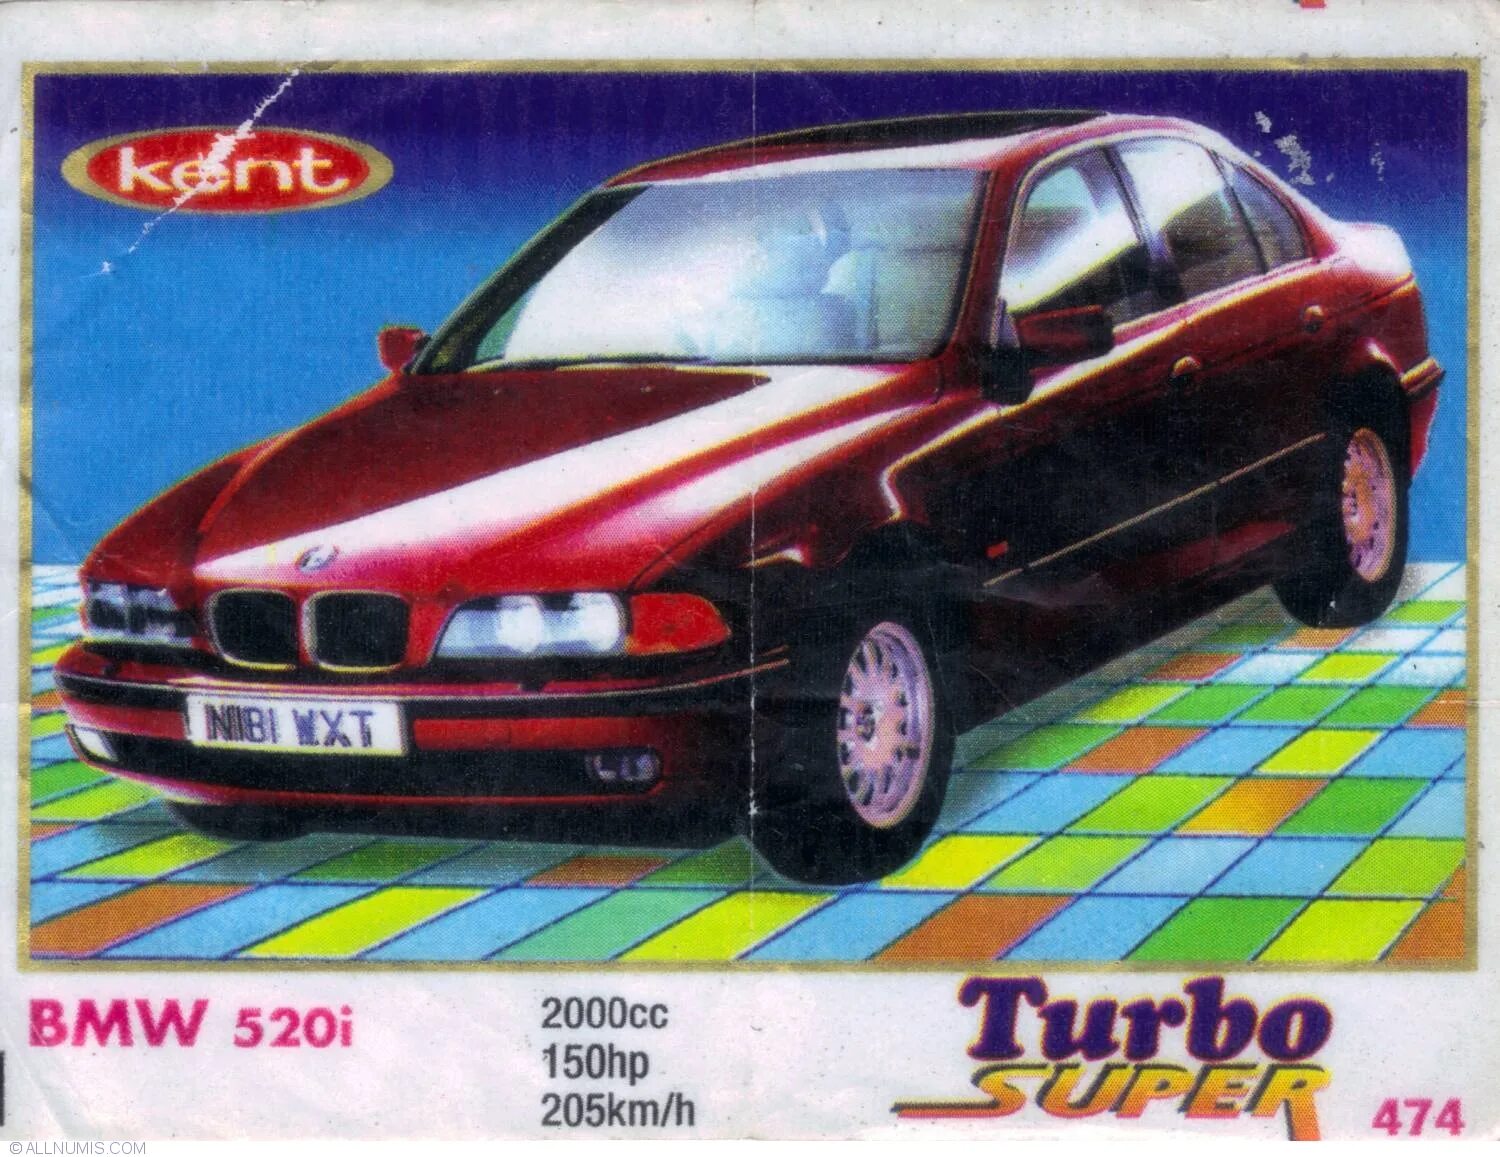 BMW 520i вкладыши турбо. Вкладыш турбо БМВ е036. BMW e34 вкладыши Turbo. Turbo super 2000 вкладыши.